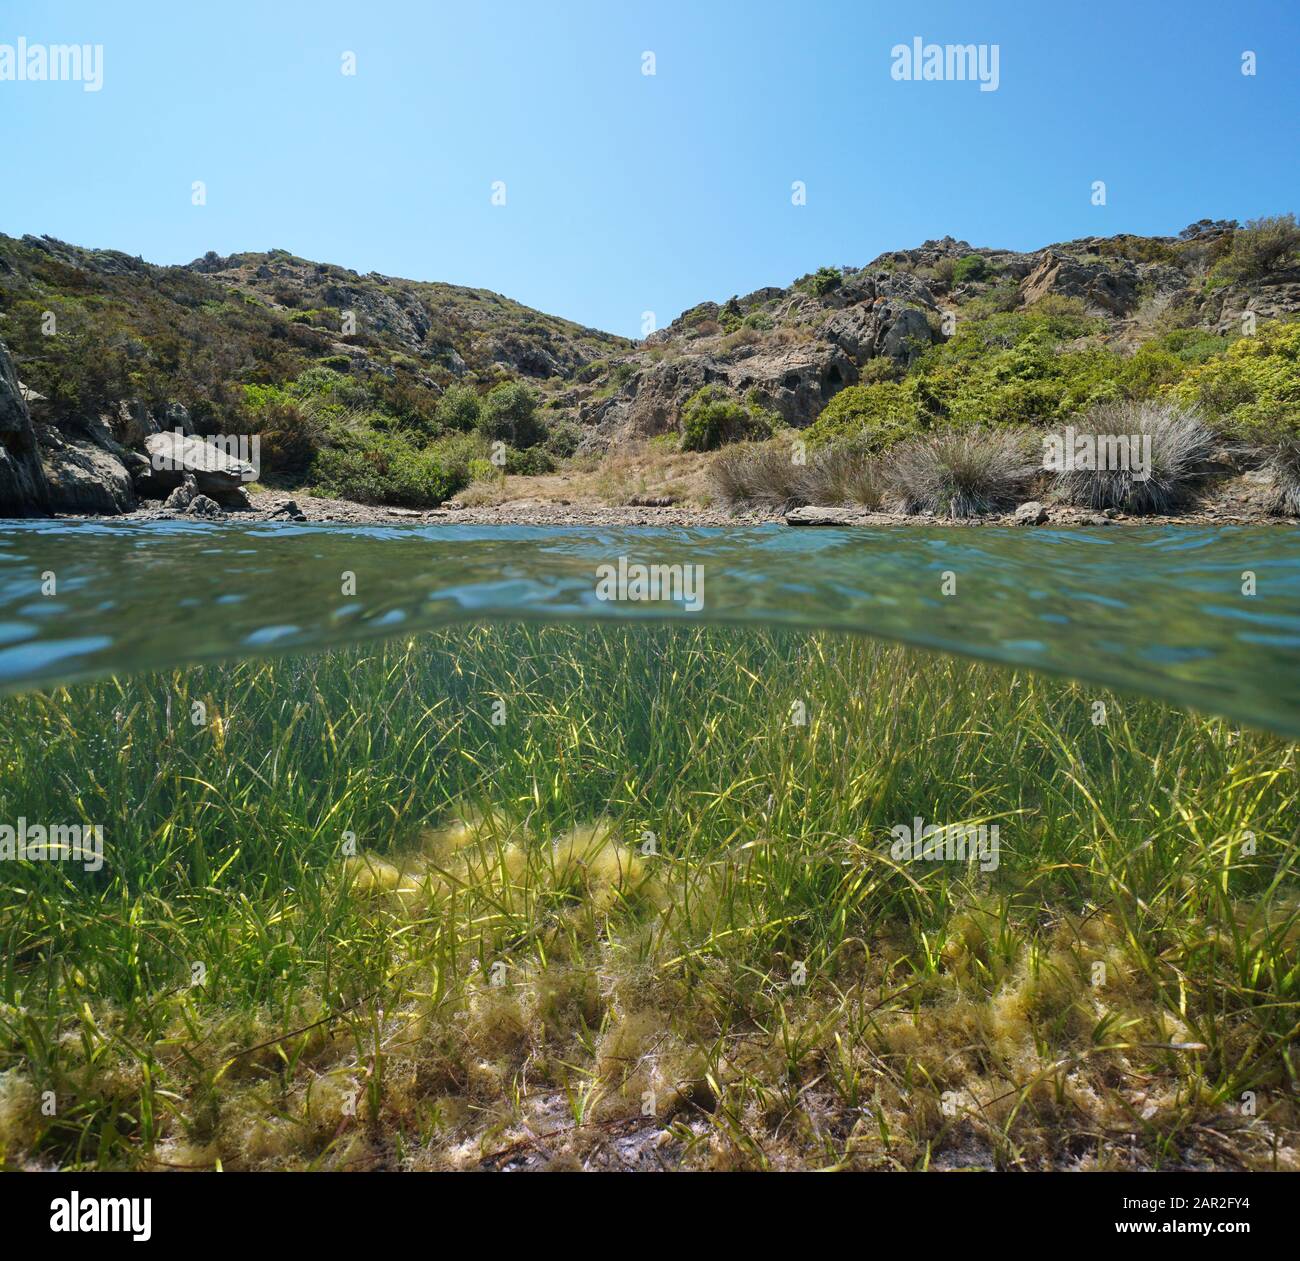 Mittelmeerküste in einer kleinen abgeschiedenen Bucht mit Meergras Cymodocea nodosa unter Wasser, geteilter Blick über und unter der Wasseroberfläche, Spanien, Costa Brava Stockfoto